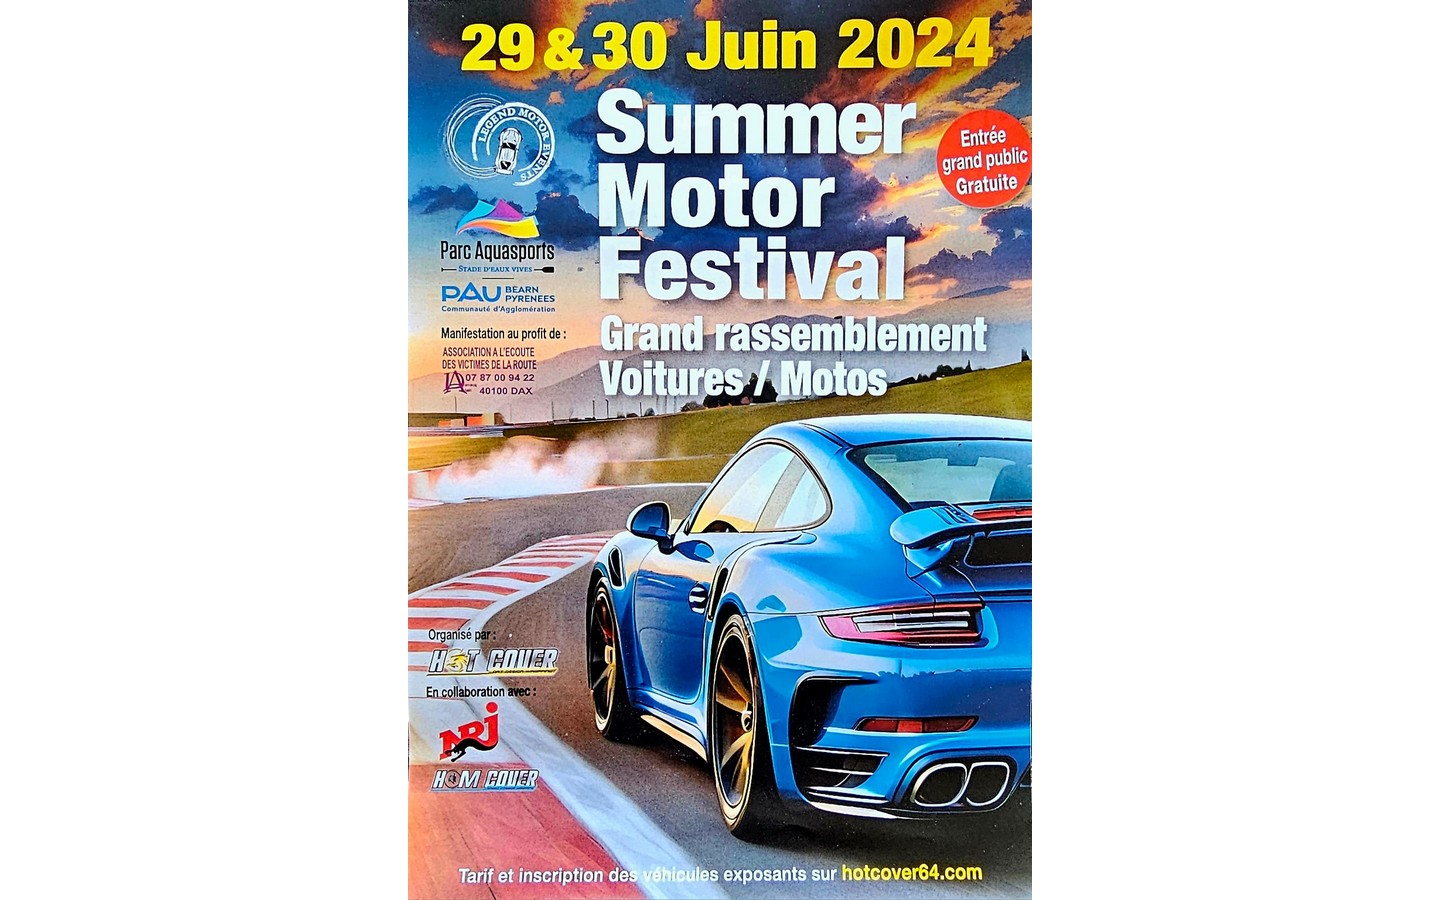 Summer motor festival